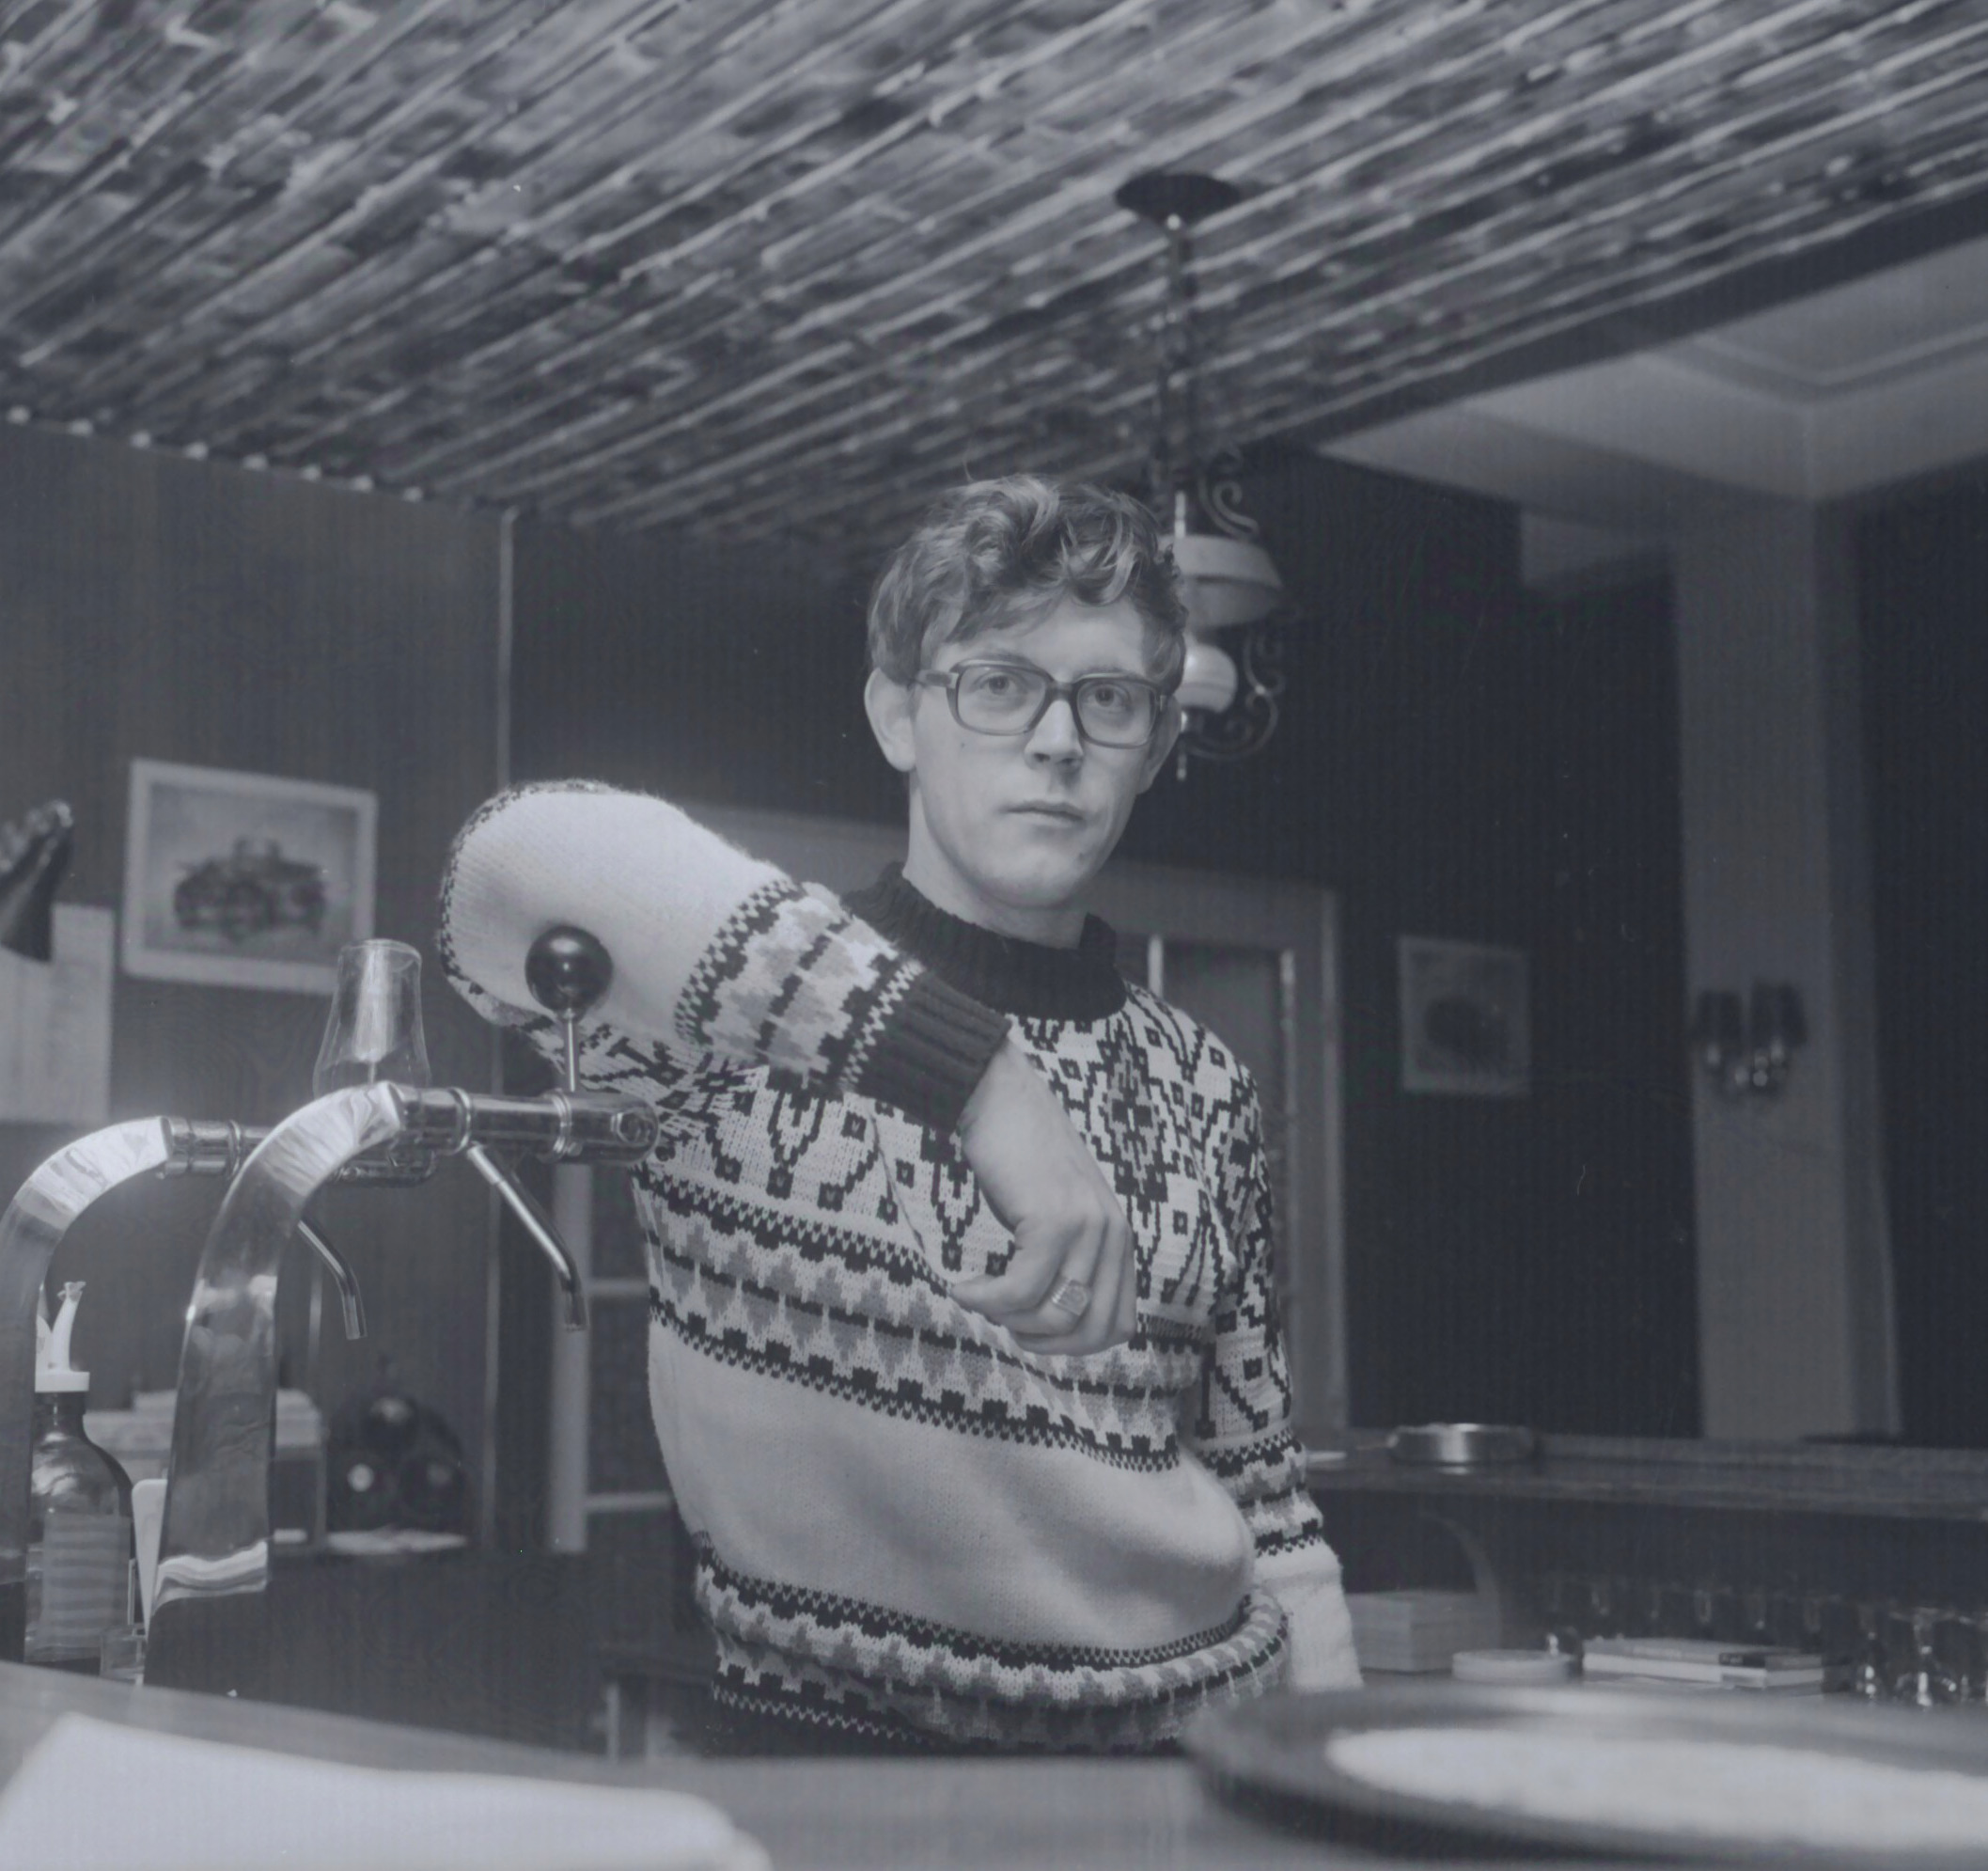 Caféhouder Jacob de Groot te Woldendorp poseert achter de tap. Foto van een negatief. Vervaardiger: Persbureau D. van der Veen, circa 1972. Bron: RHC GA, Groninger Archieven.